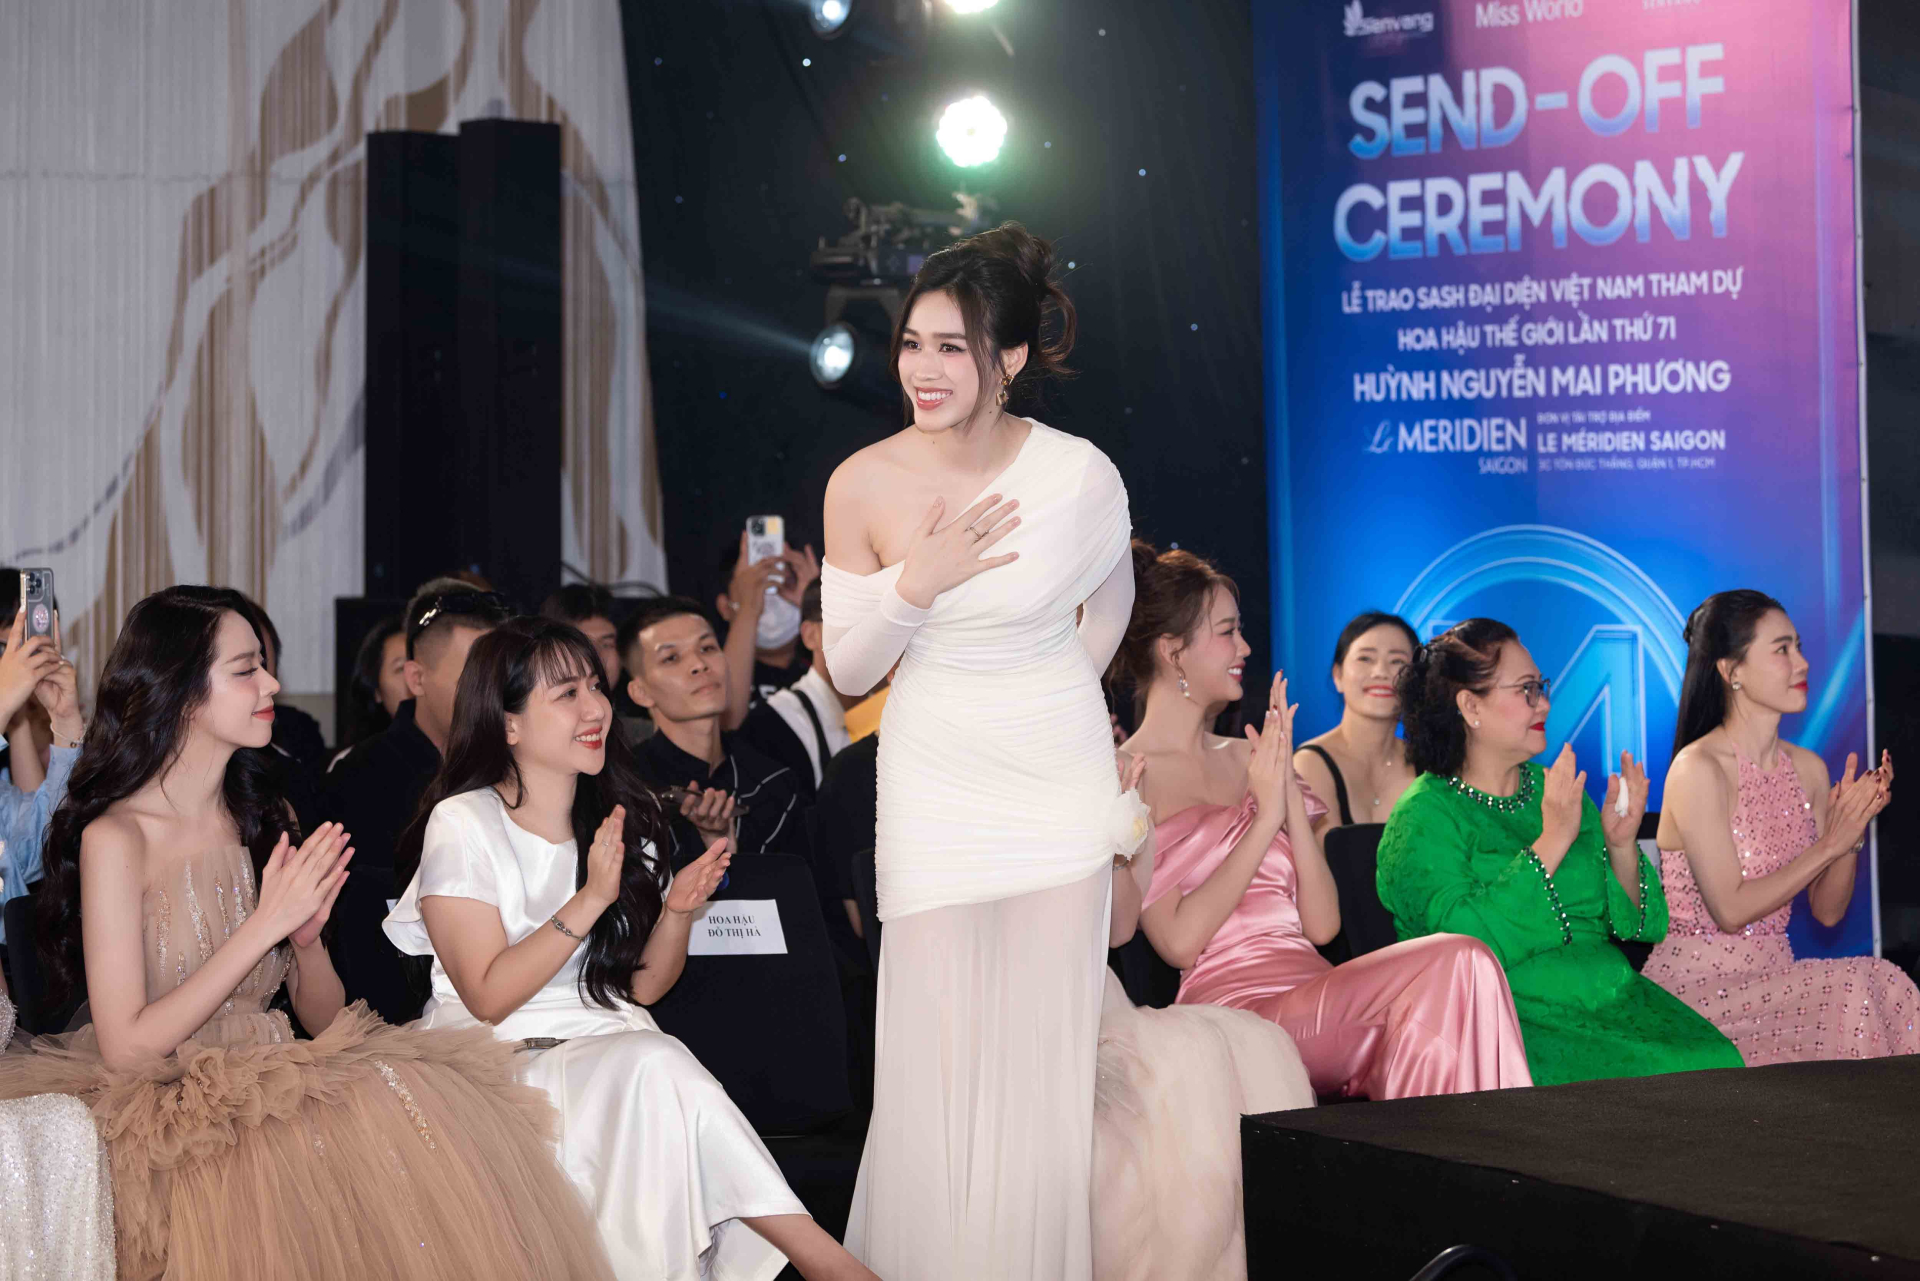 Toàn cảnh lễ trao sash của Hoa hậu Mai Phương, nhan sắc và tài năng ngày càng thăng hạng - ảnh 3